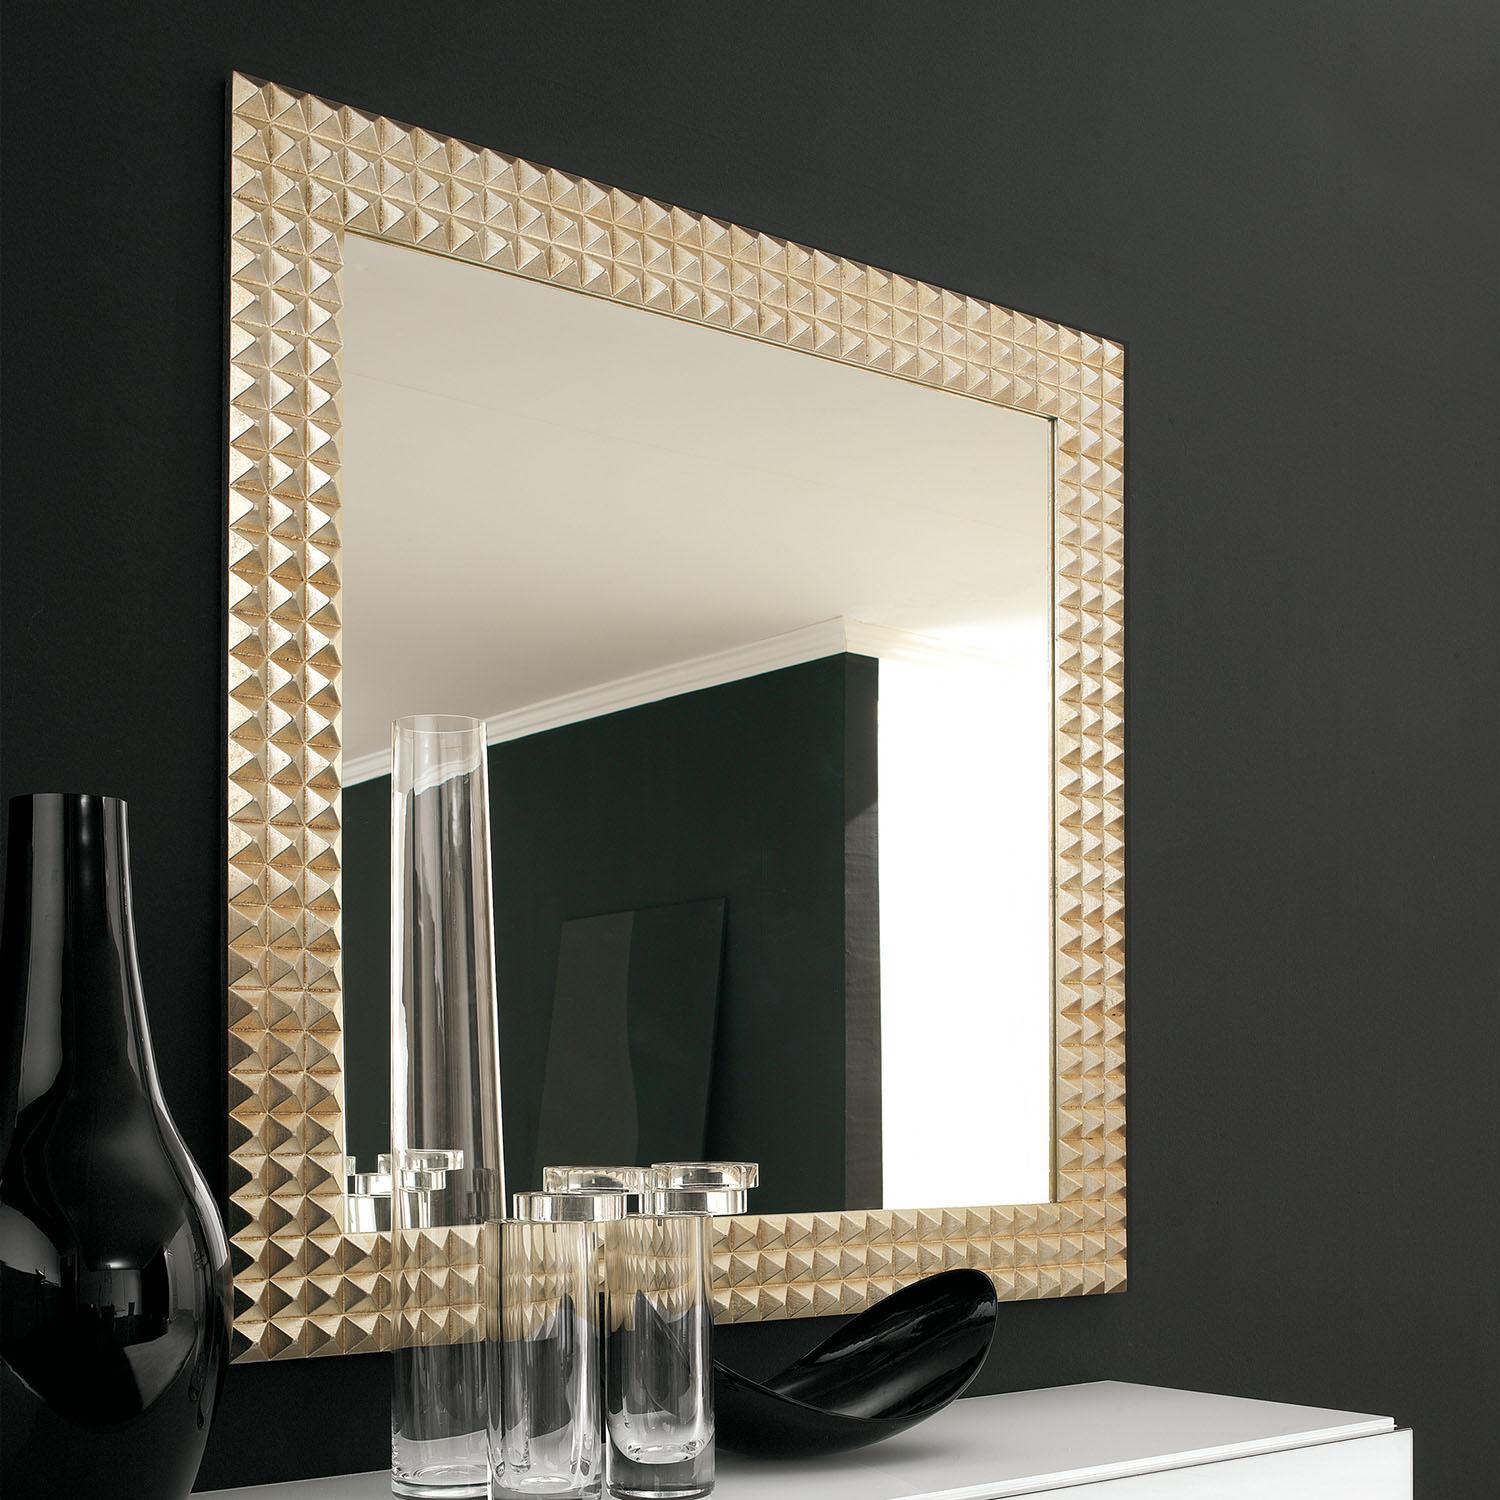 Specchio tondo Ø 80 cm con cornice dorata